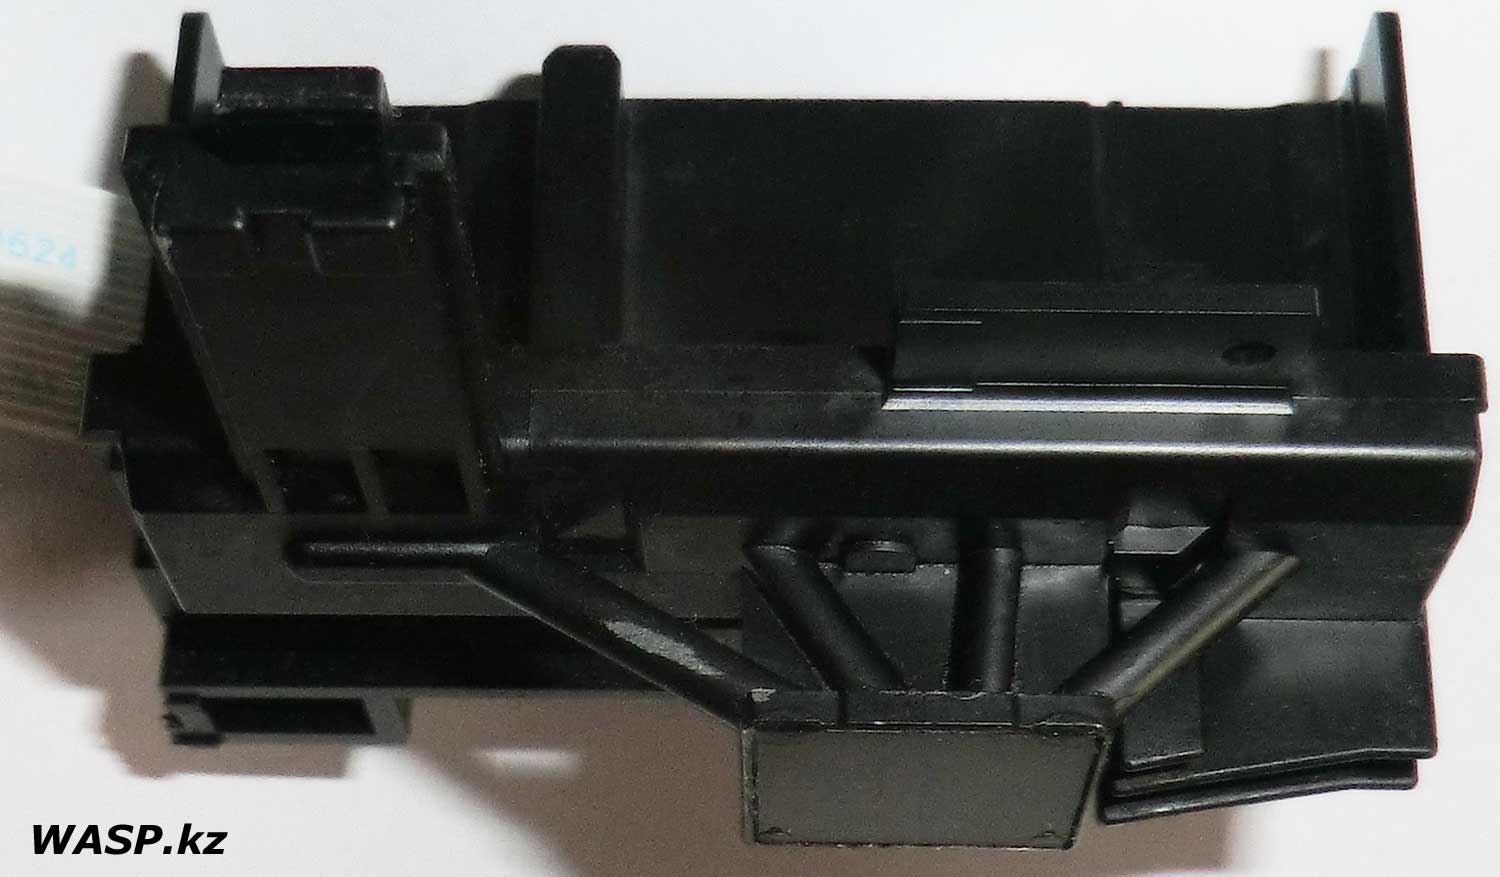 Epson F093020 печатающая головка обзор и очистка засохших чернил